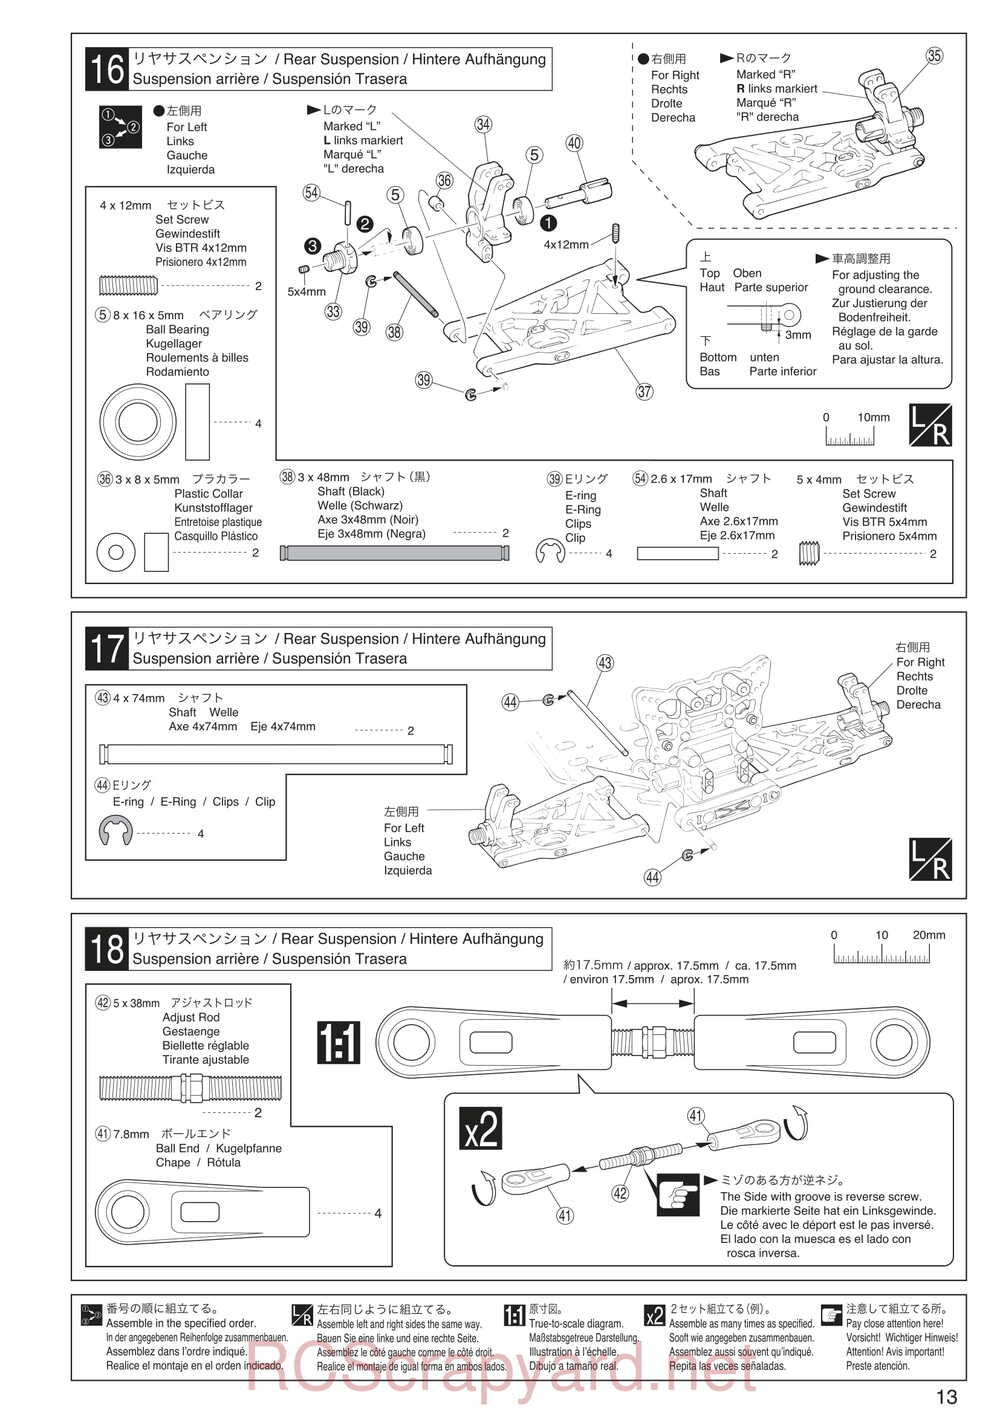 Kyosho - 30935 - Inferno GT2 VE Race-Spec - Manual - Page 13